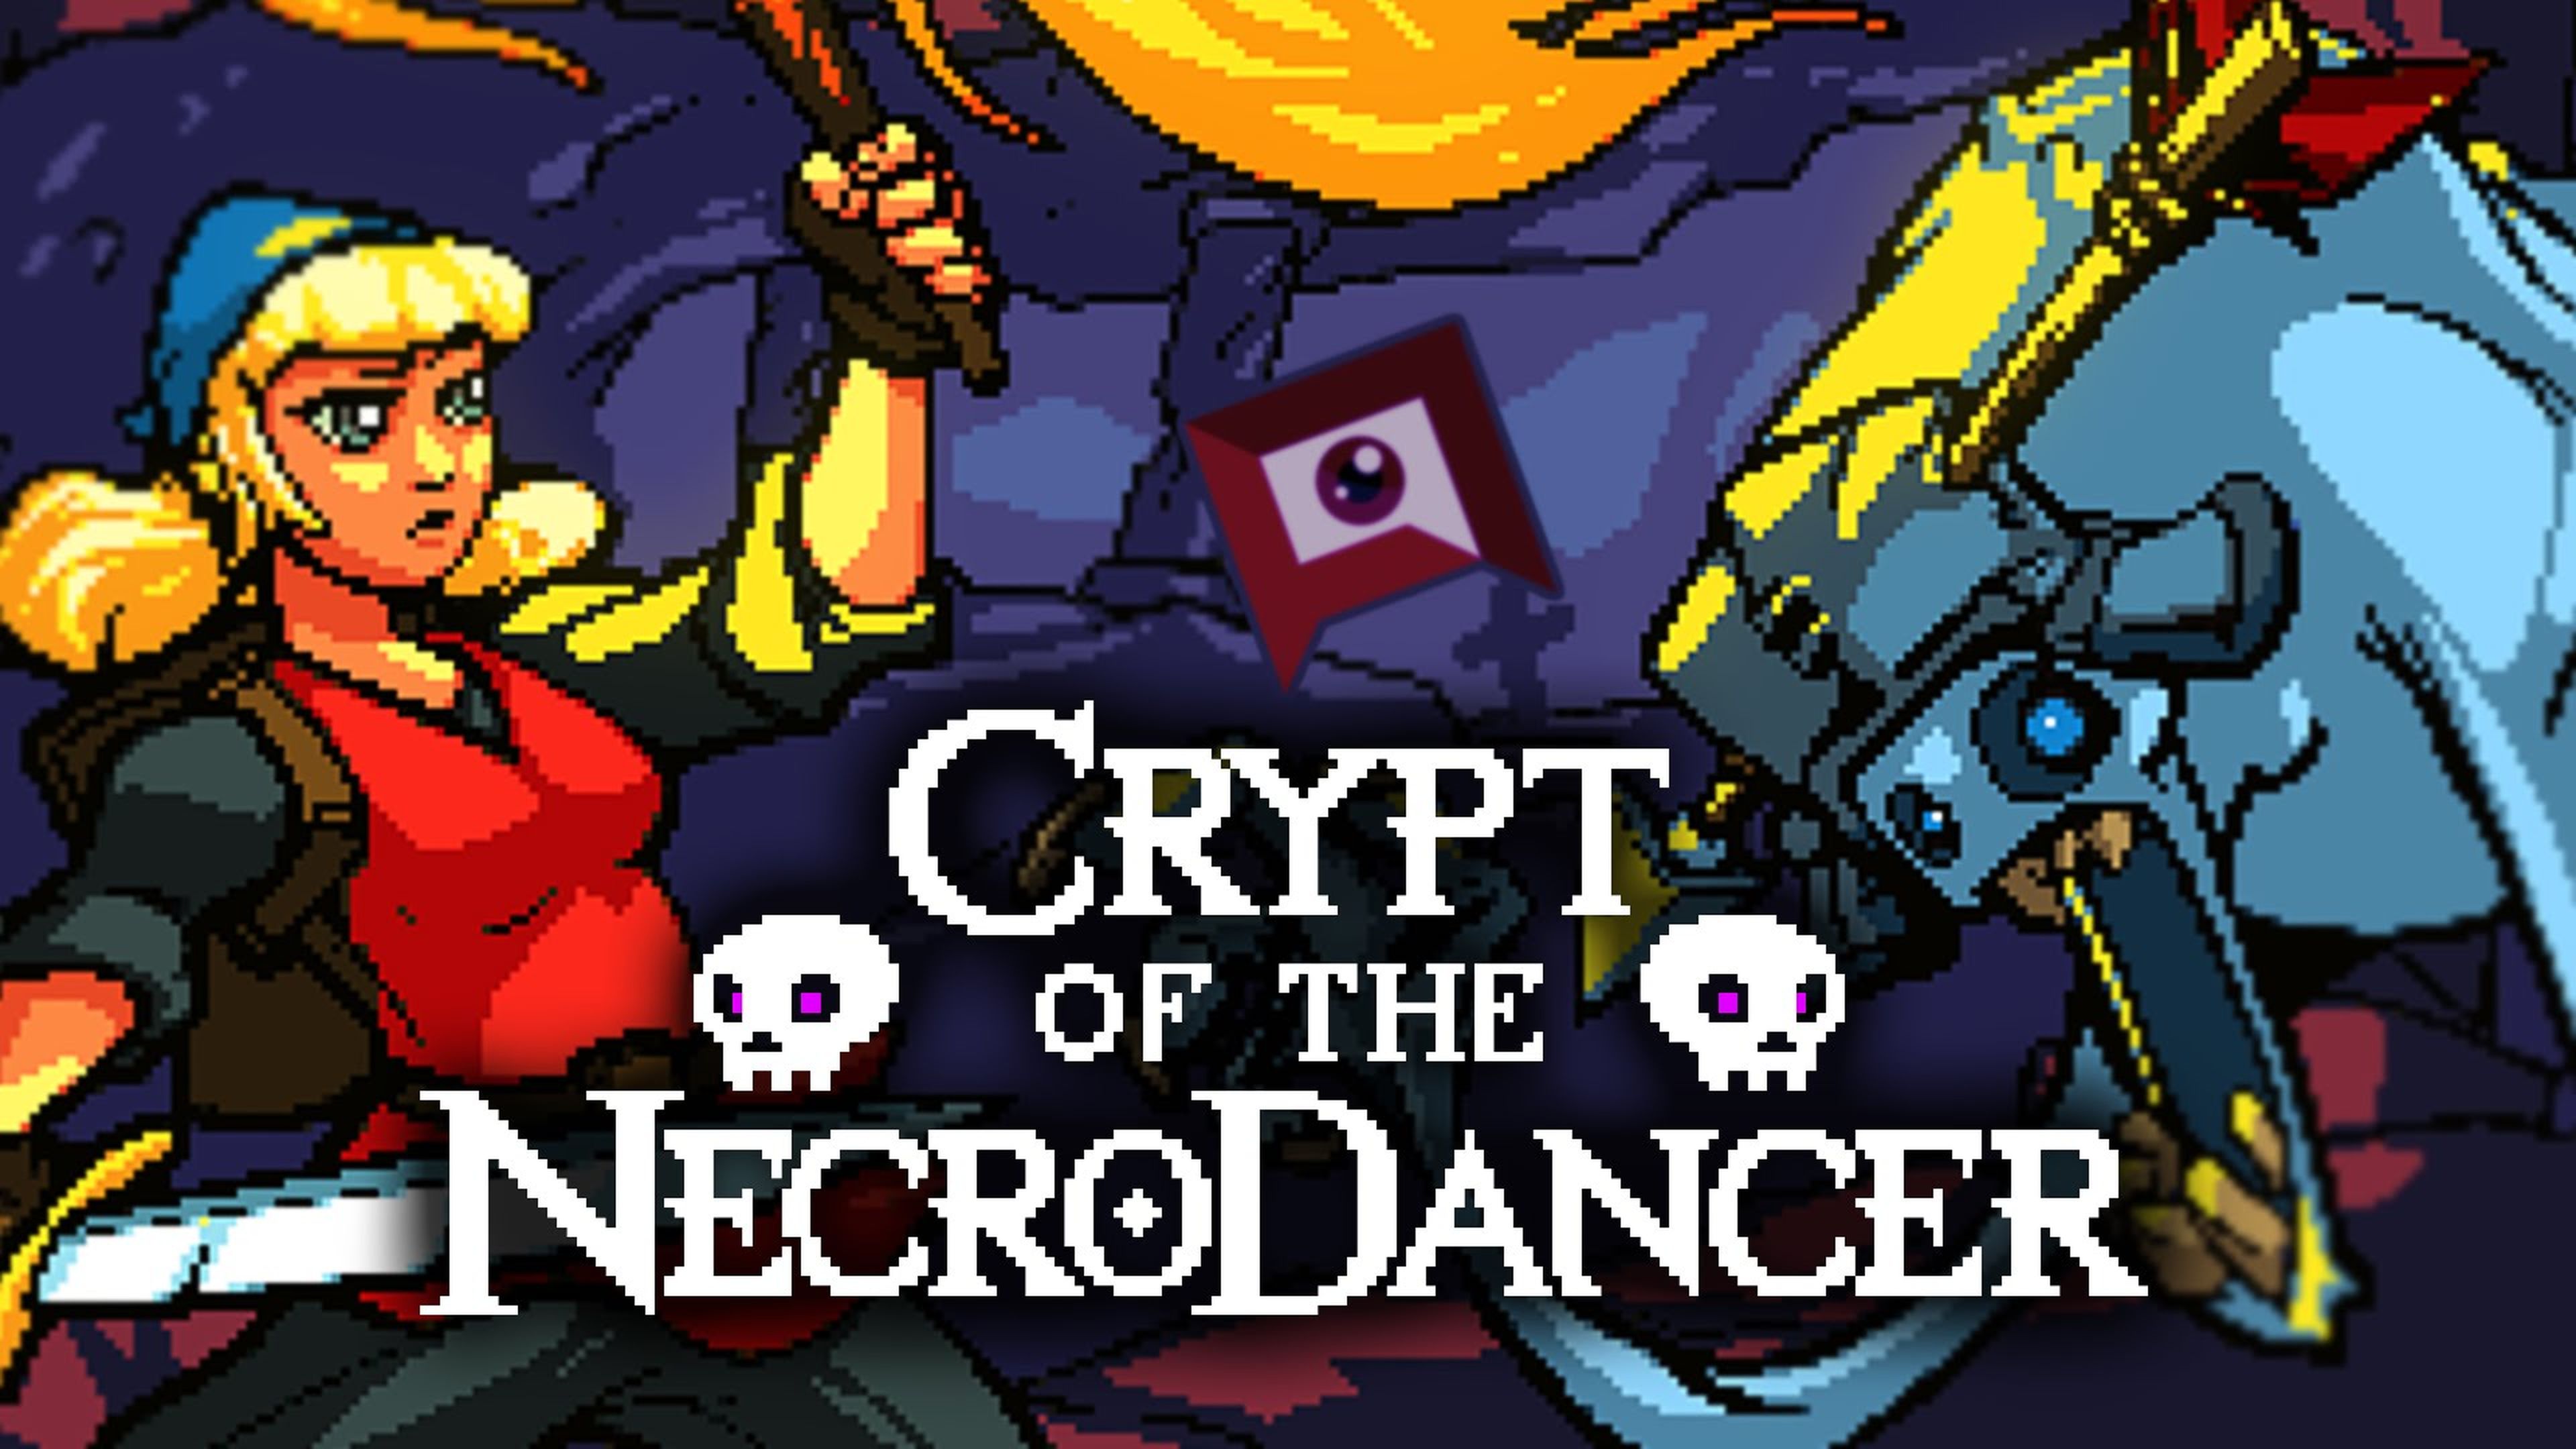 Crypt of the NecroDancer llegará próximamente a PS4 y PS Vita